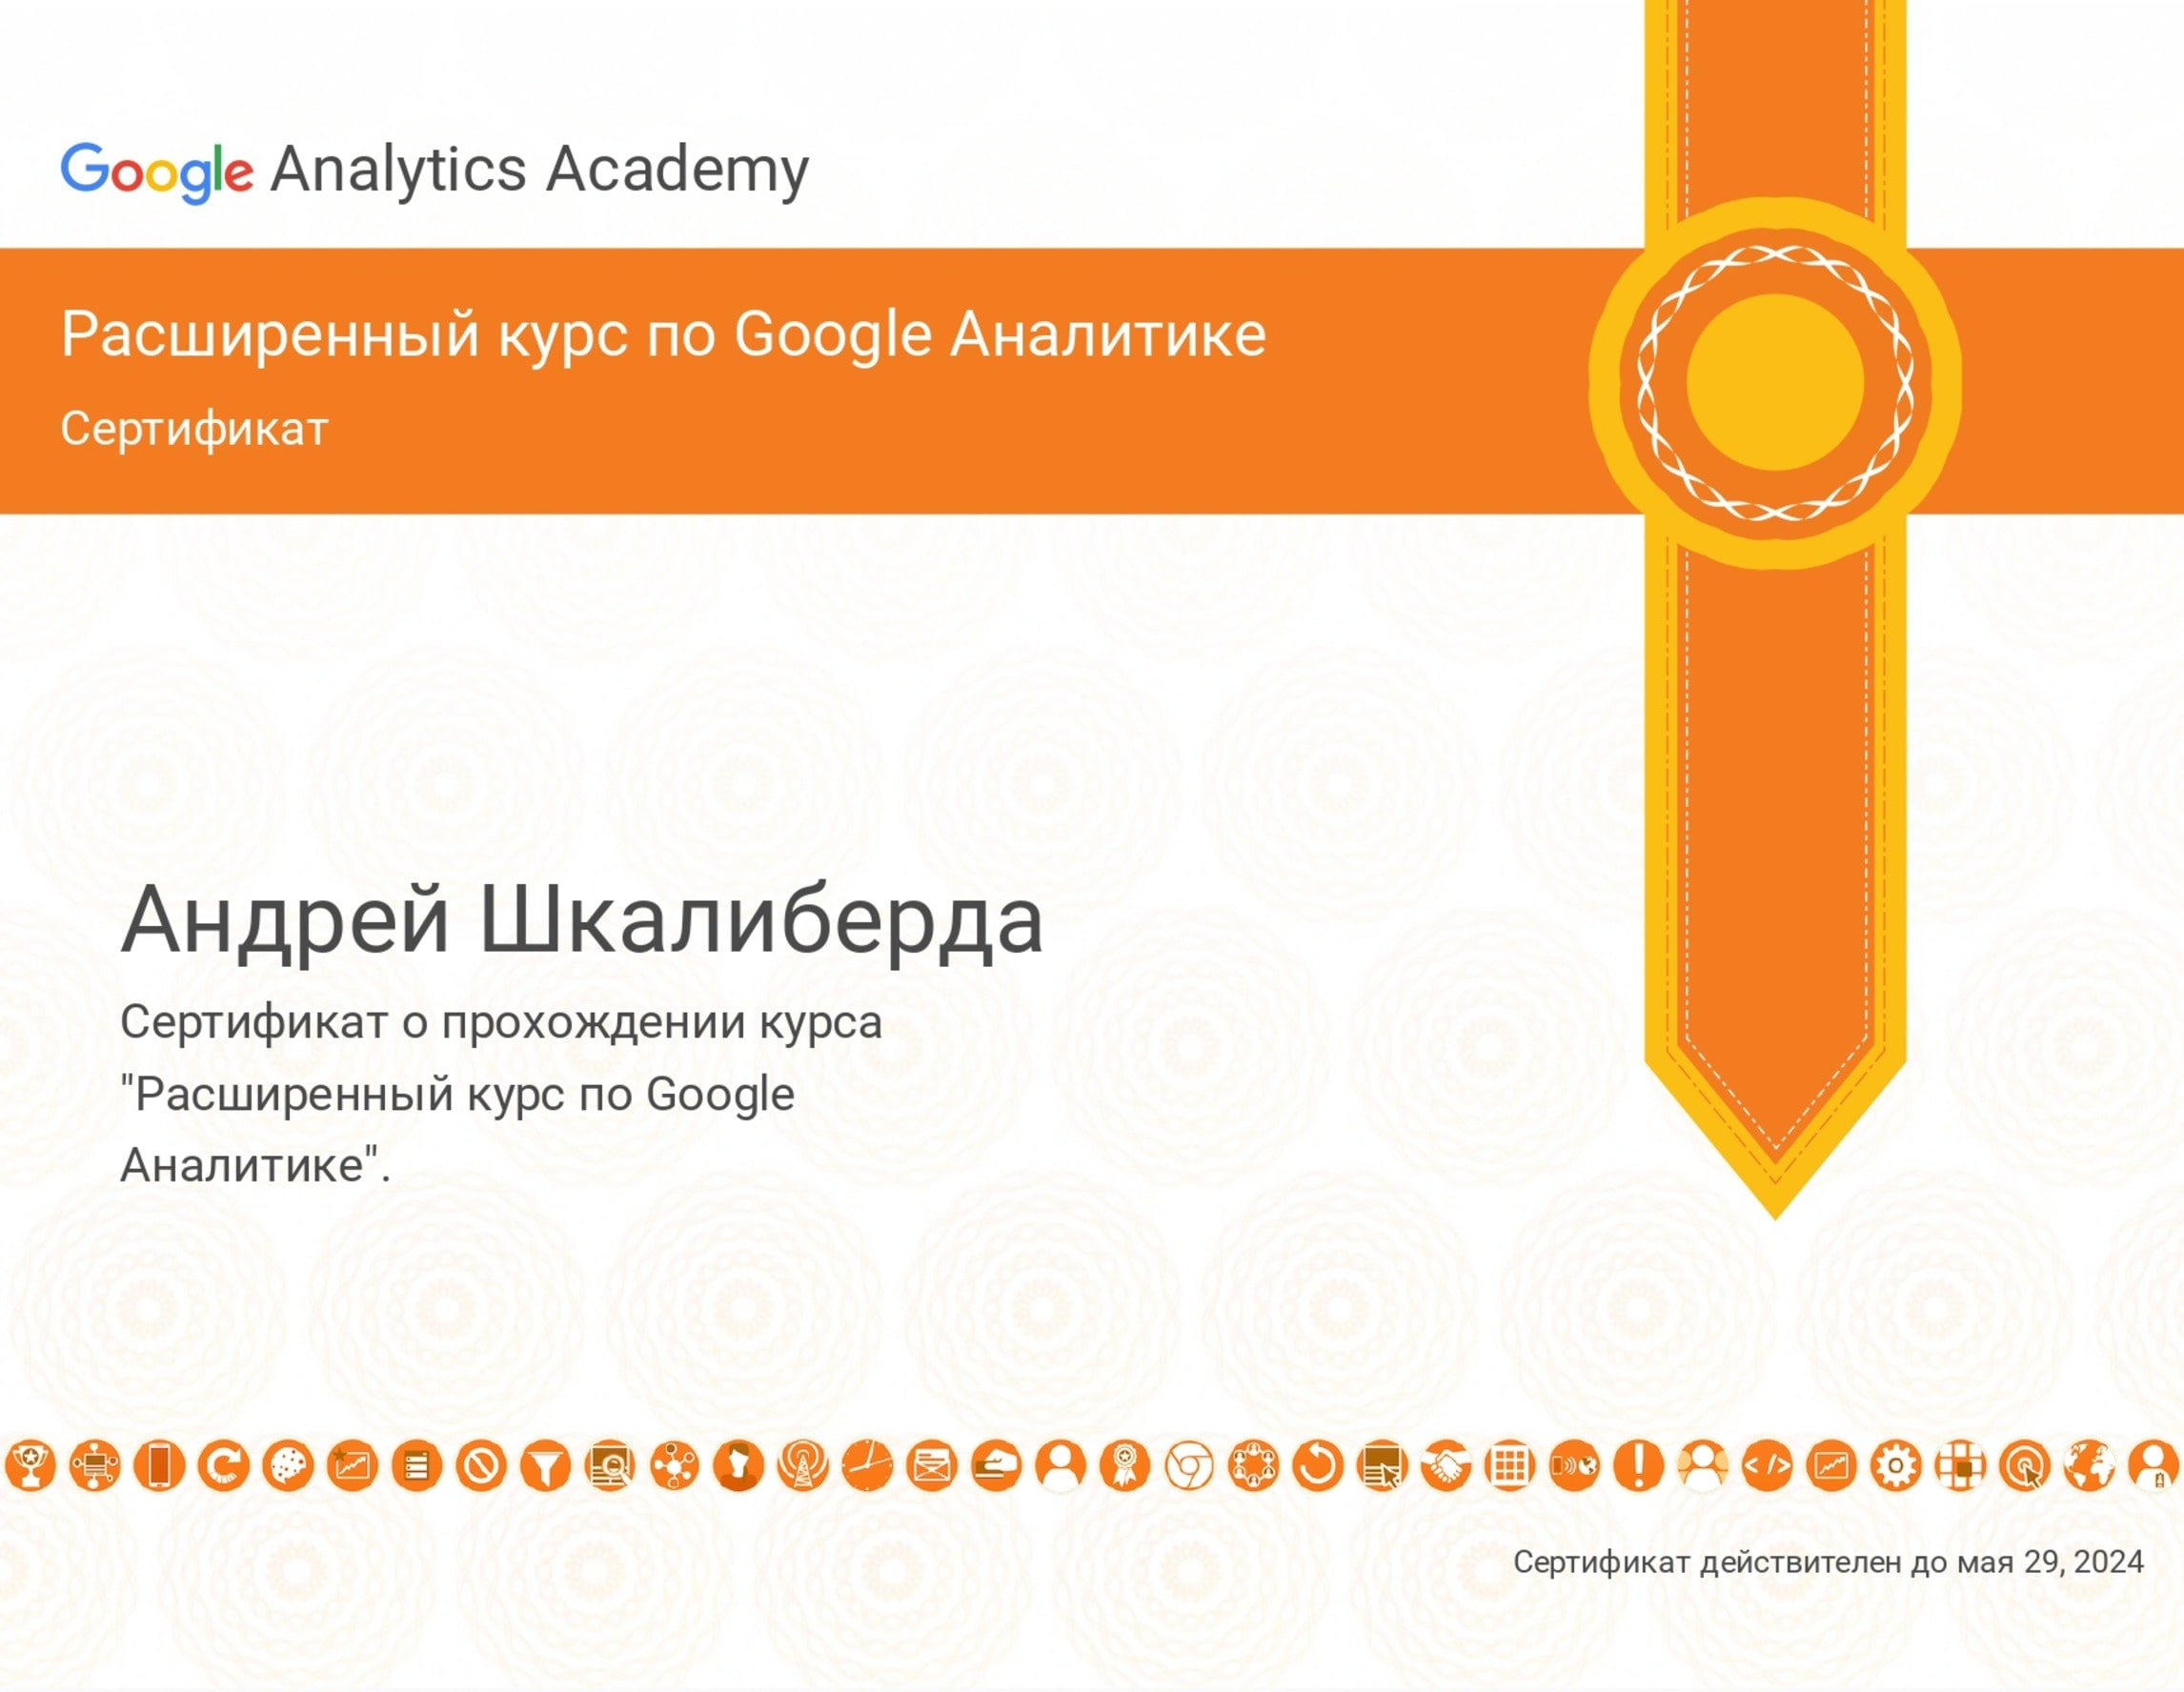 Андрей Шкалиберда сертификат